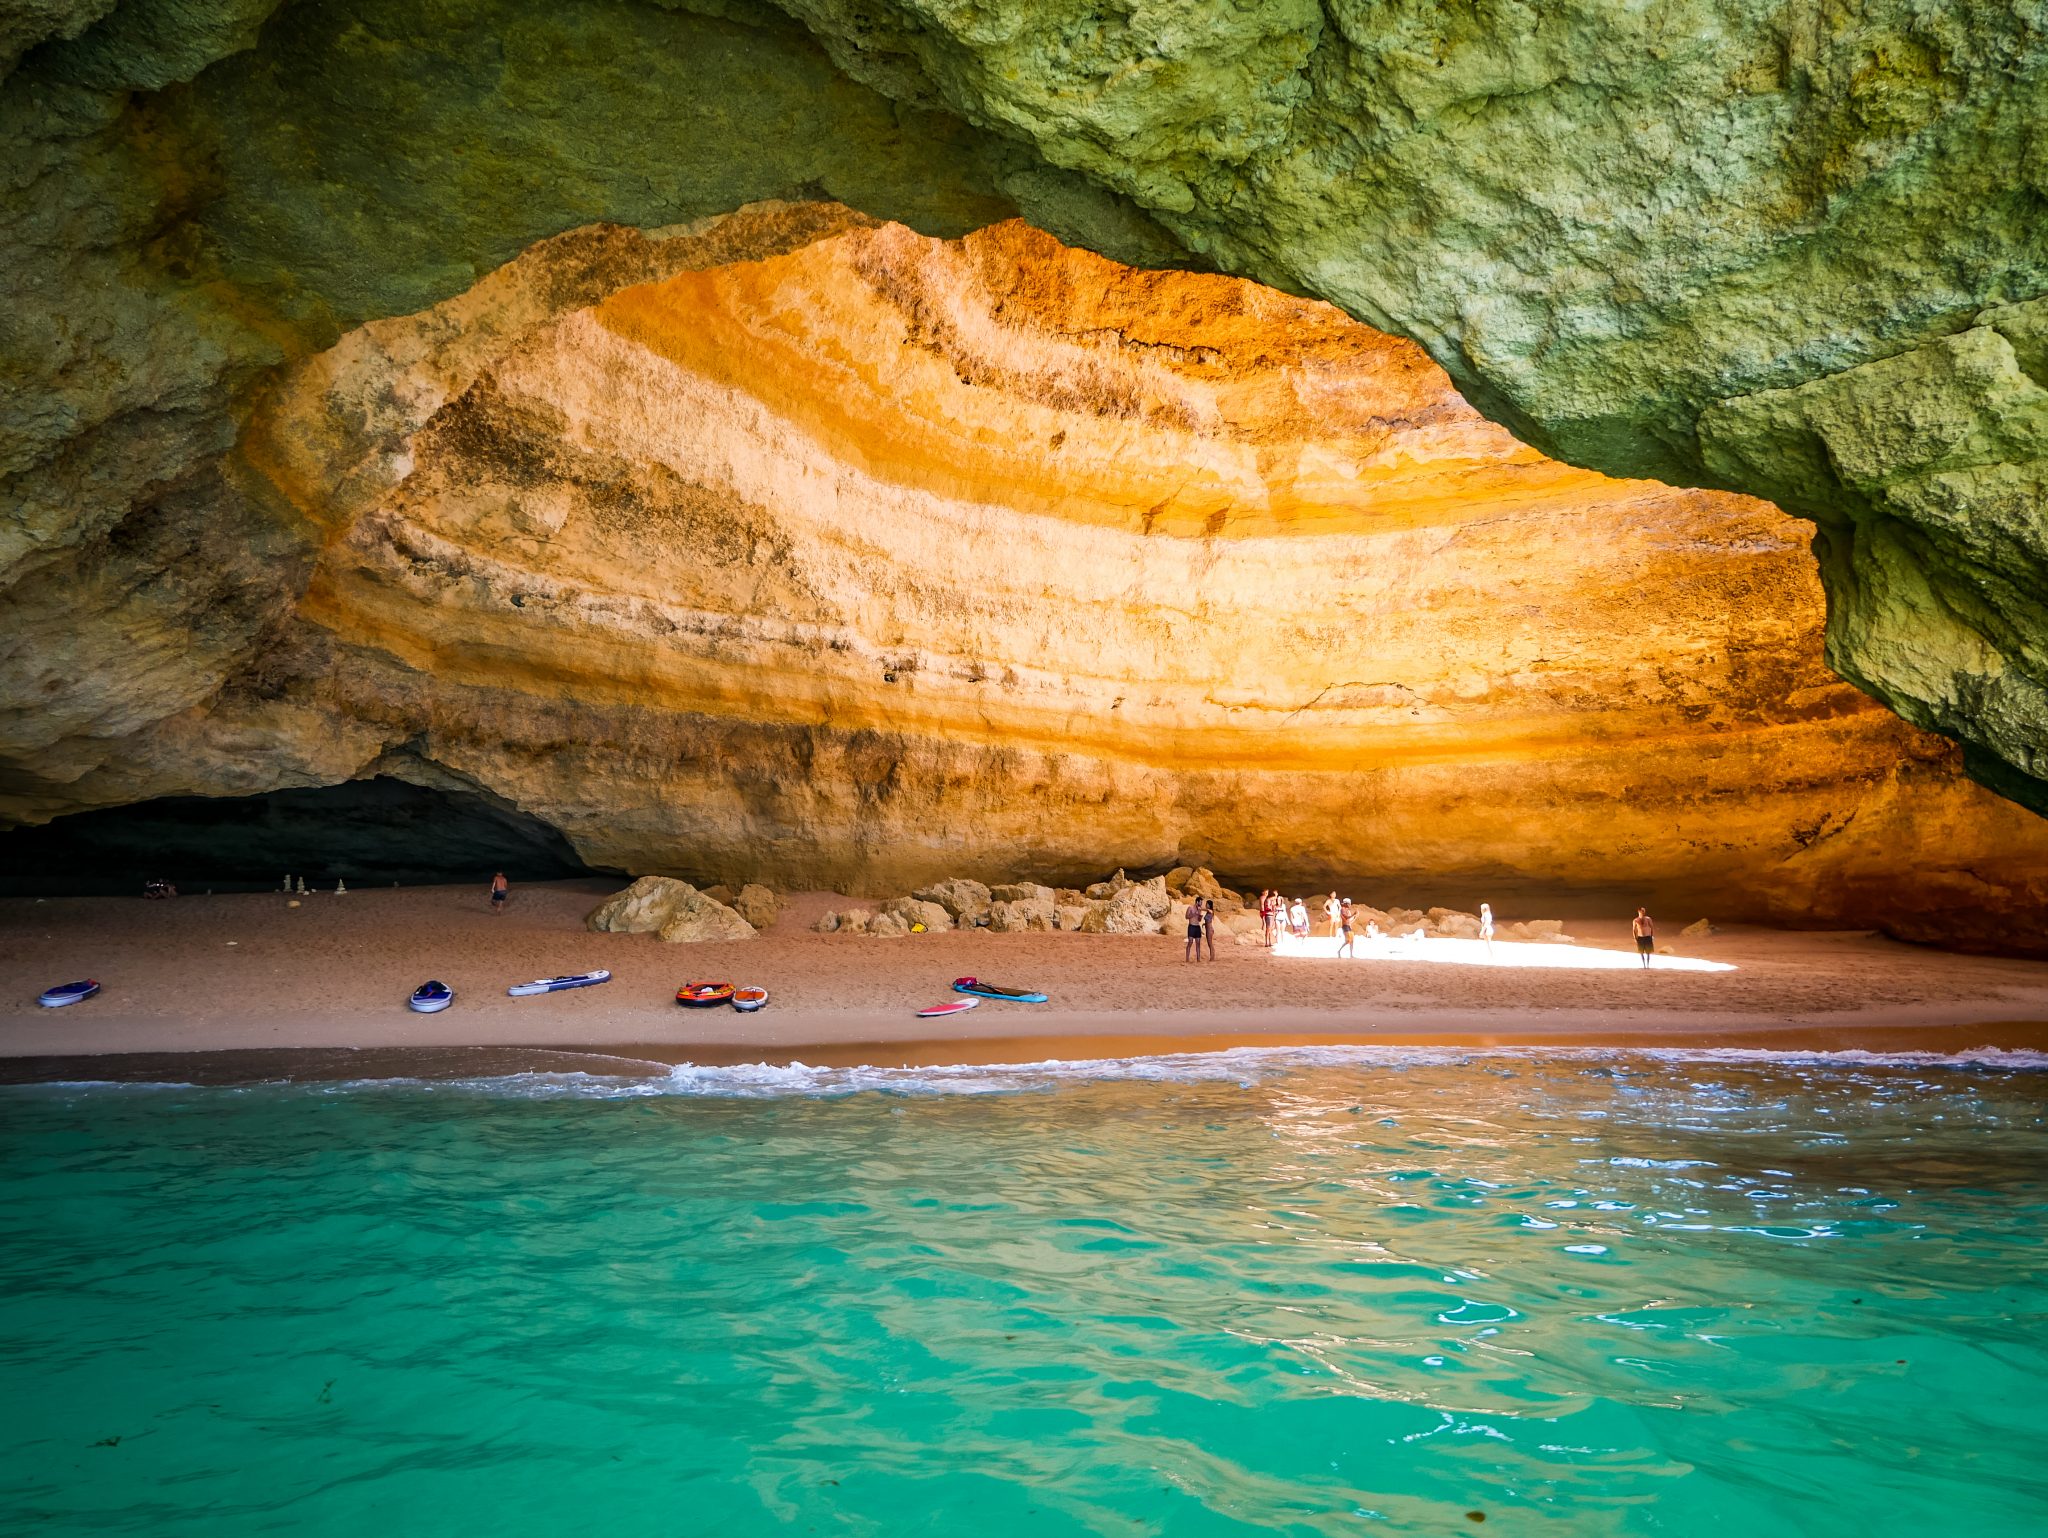 Vom Strand Praia de Benagali starten viele Bootstouren zu den bekanntesten Höhlen Europas, wie diese beispielsweise.